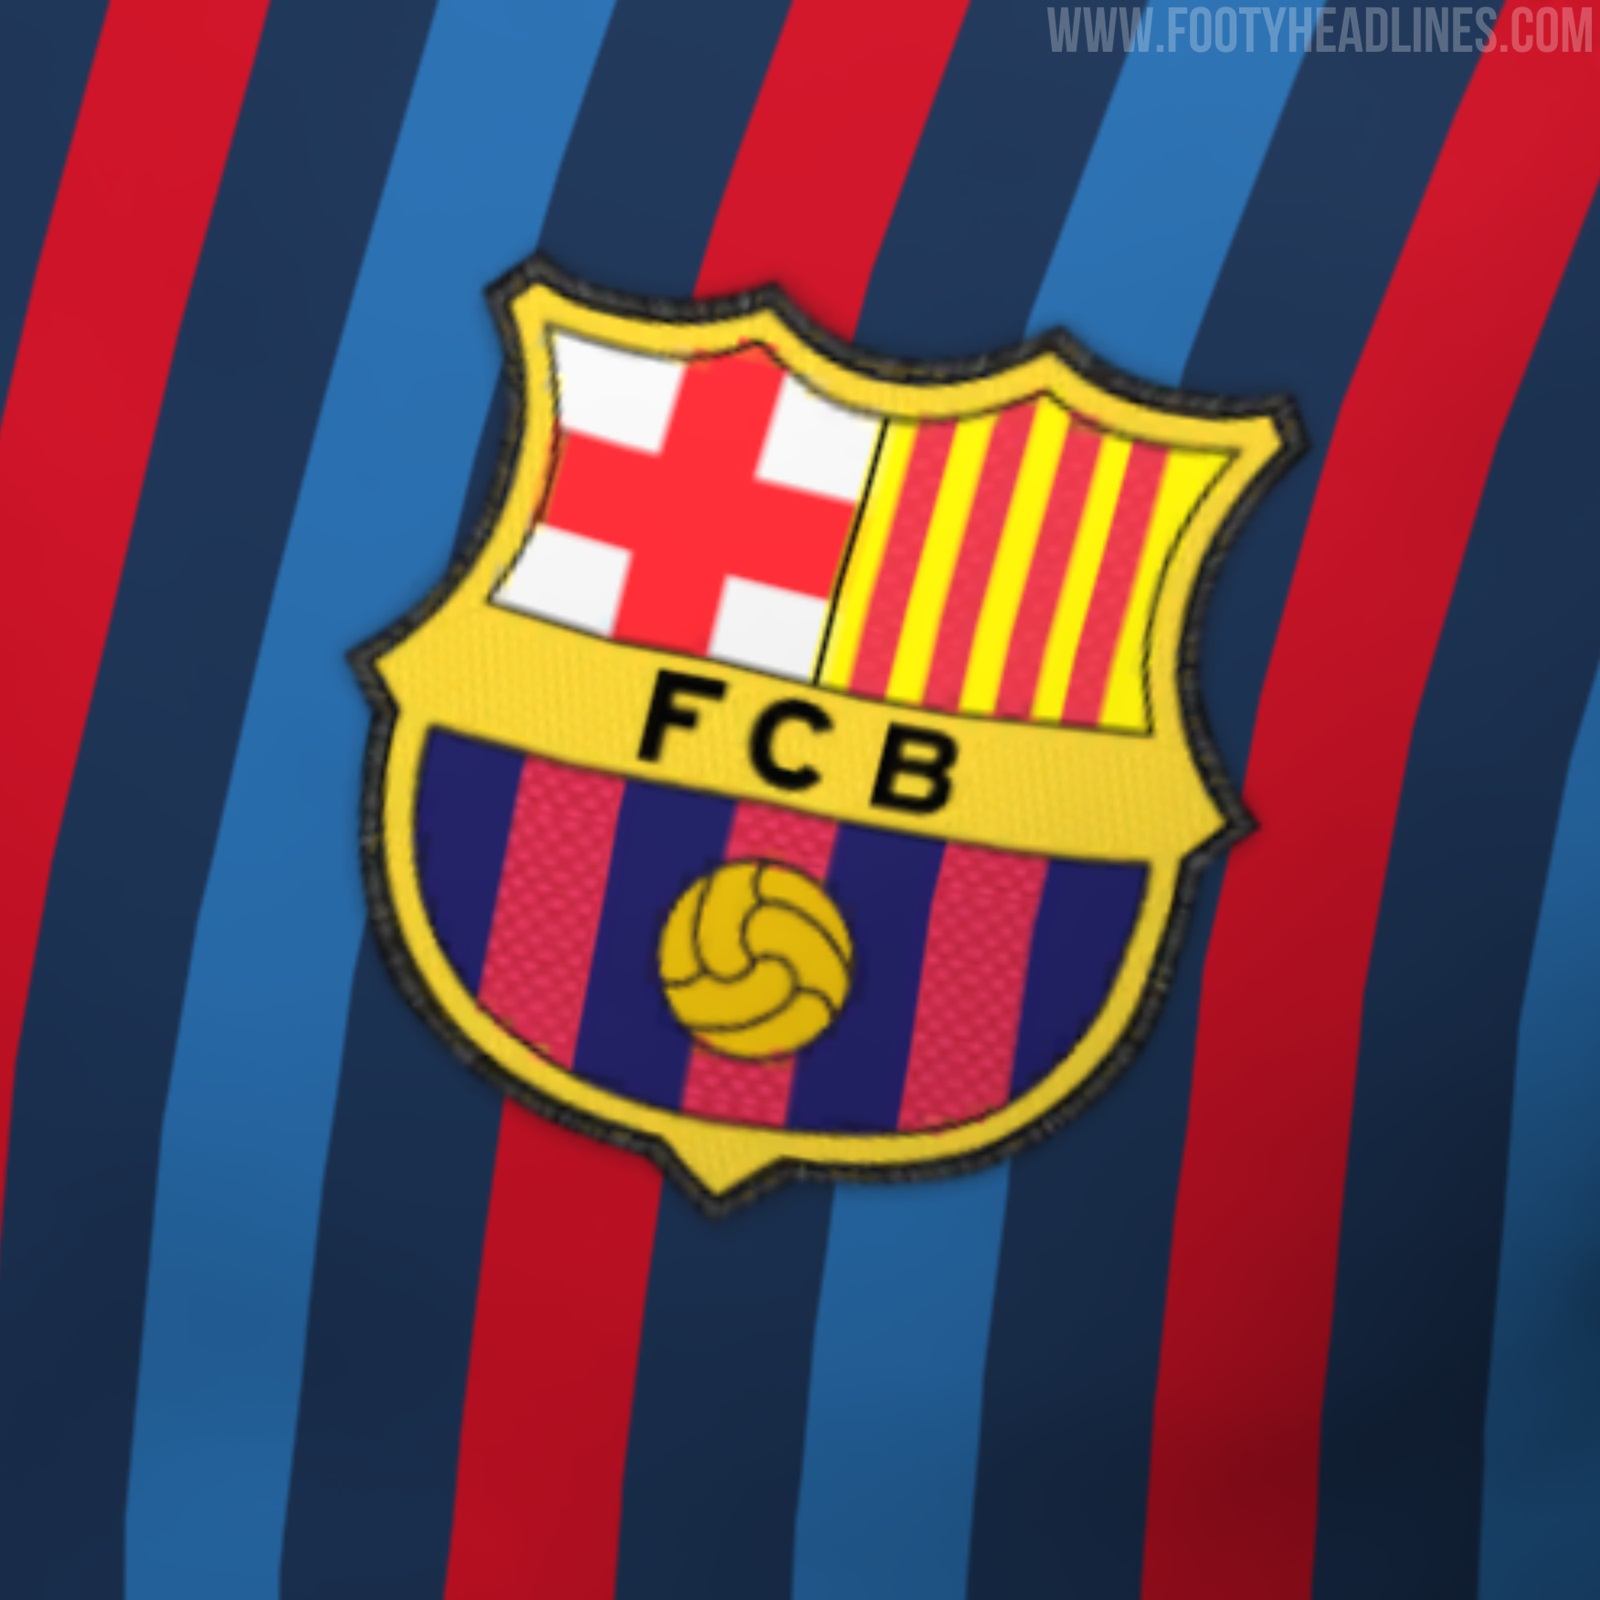 FC Barcelona 22 23 Home Kit Leaked